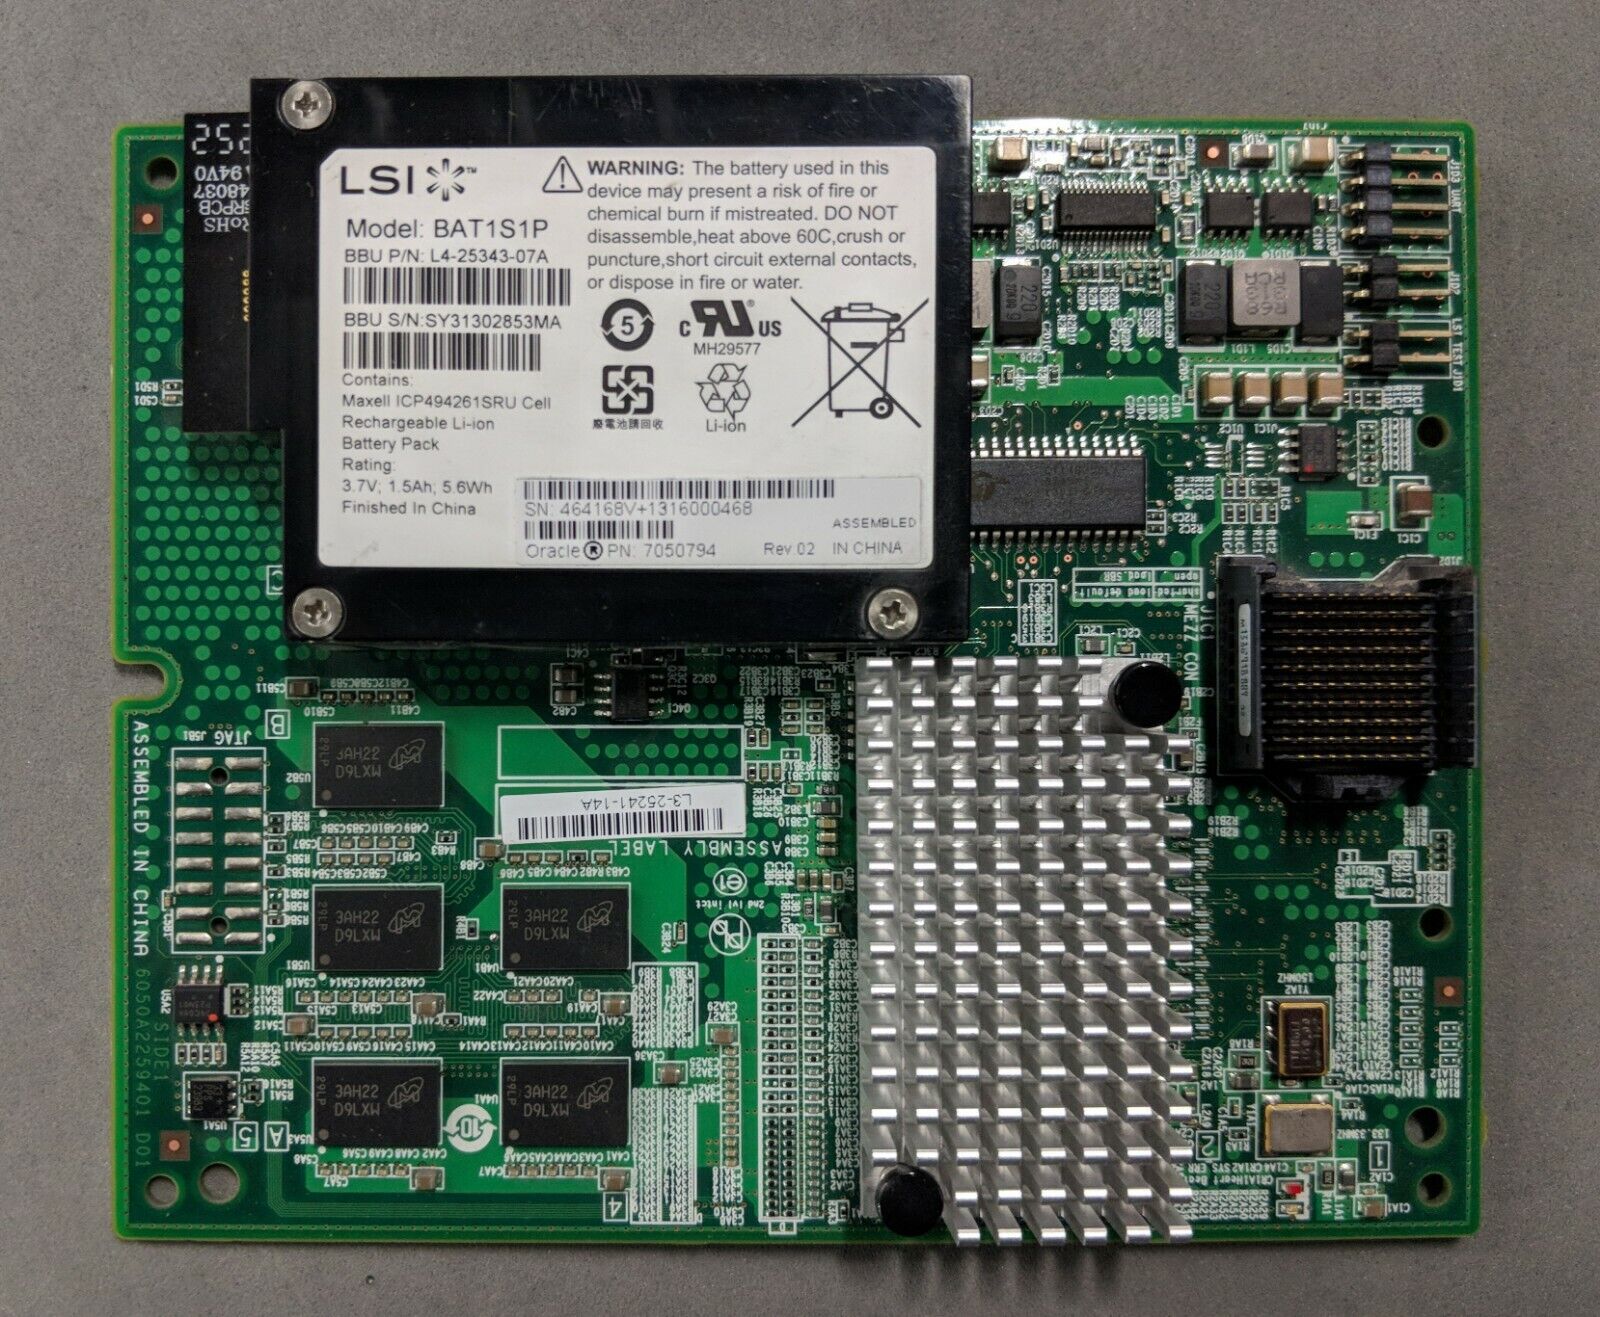 7047851: Sun/Oracle 6Gbps SAS-2 RAID card with 7050794 BBU